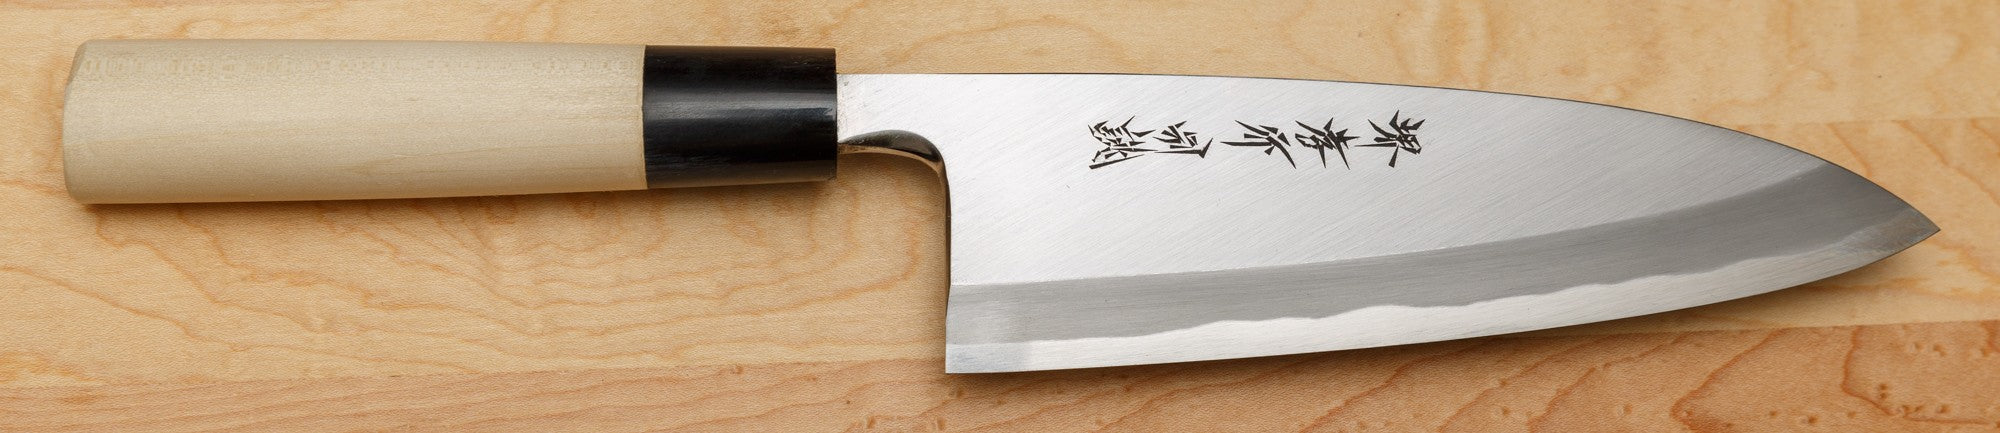 Sakai Takayuki Deba Knife, Tokojou, 180mm / 7.1"